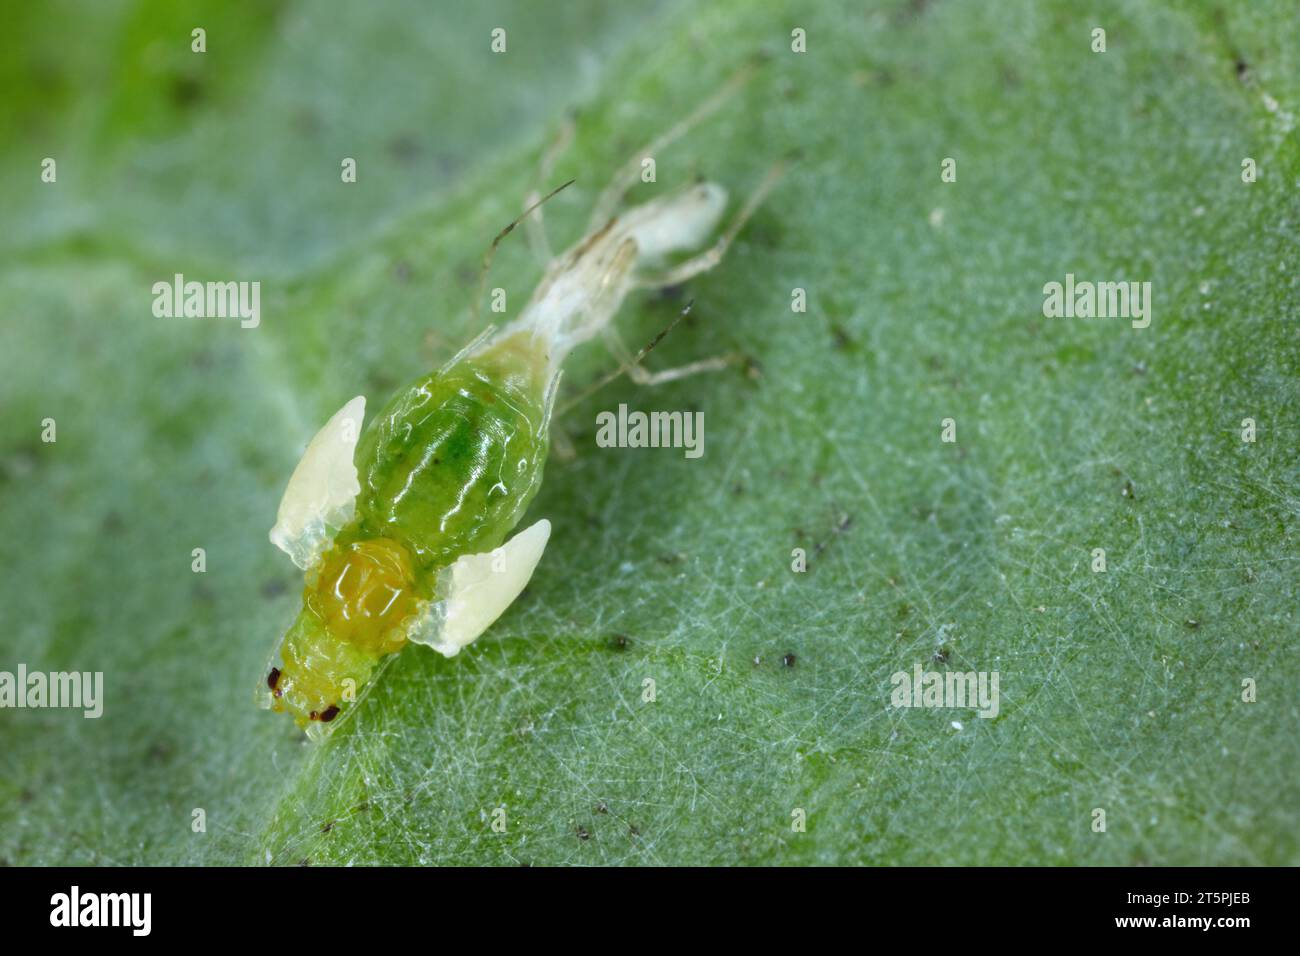 Eine grüne Pfirsichblattlaus (Myzus persicae), die ihre Kutikula abgibt und aus dem Nymphe-Stadium zu einem erwachsenen, geflügelten Individuum in hoher Vergrößerung übergeht. Stockfoto